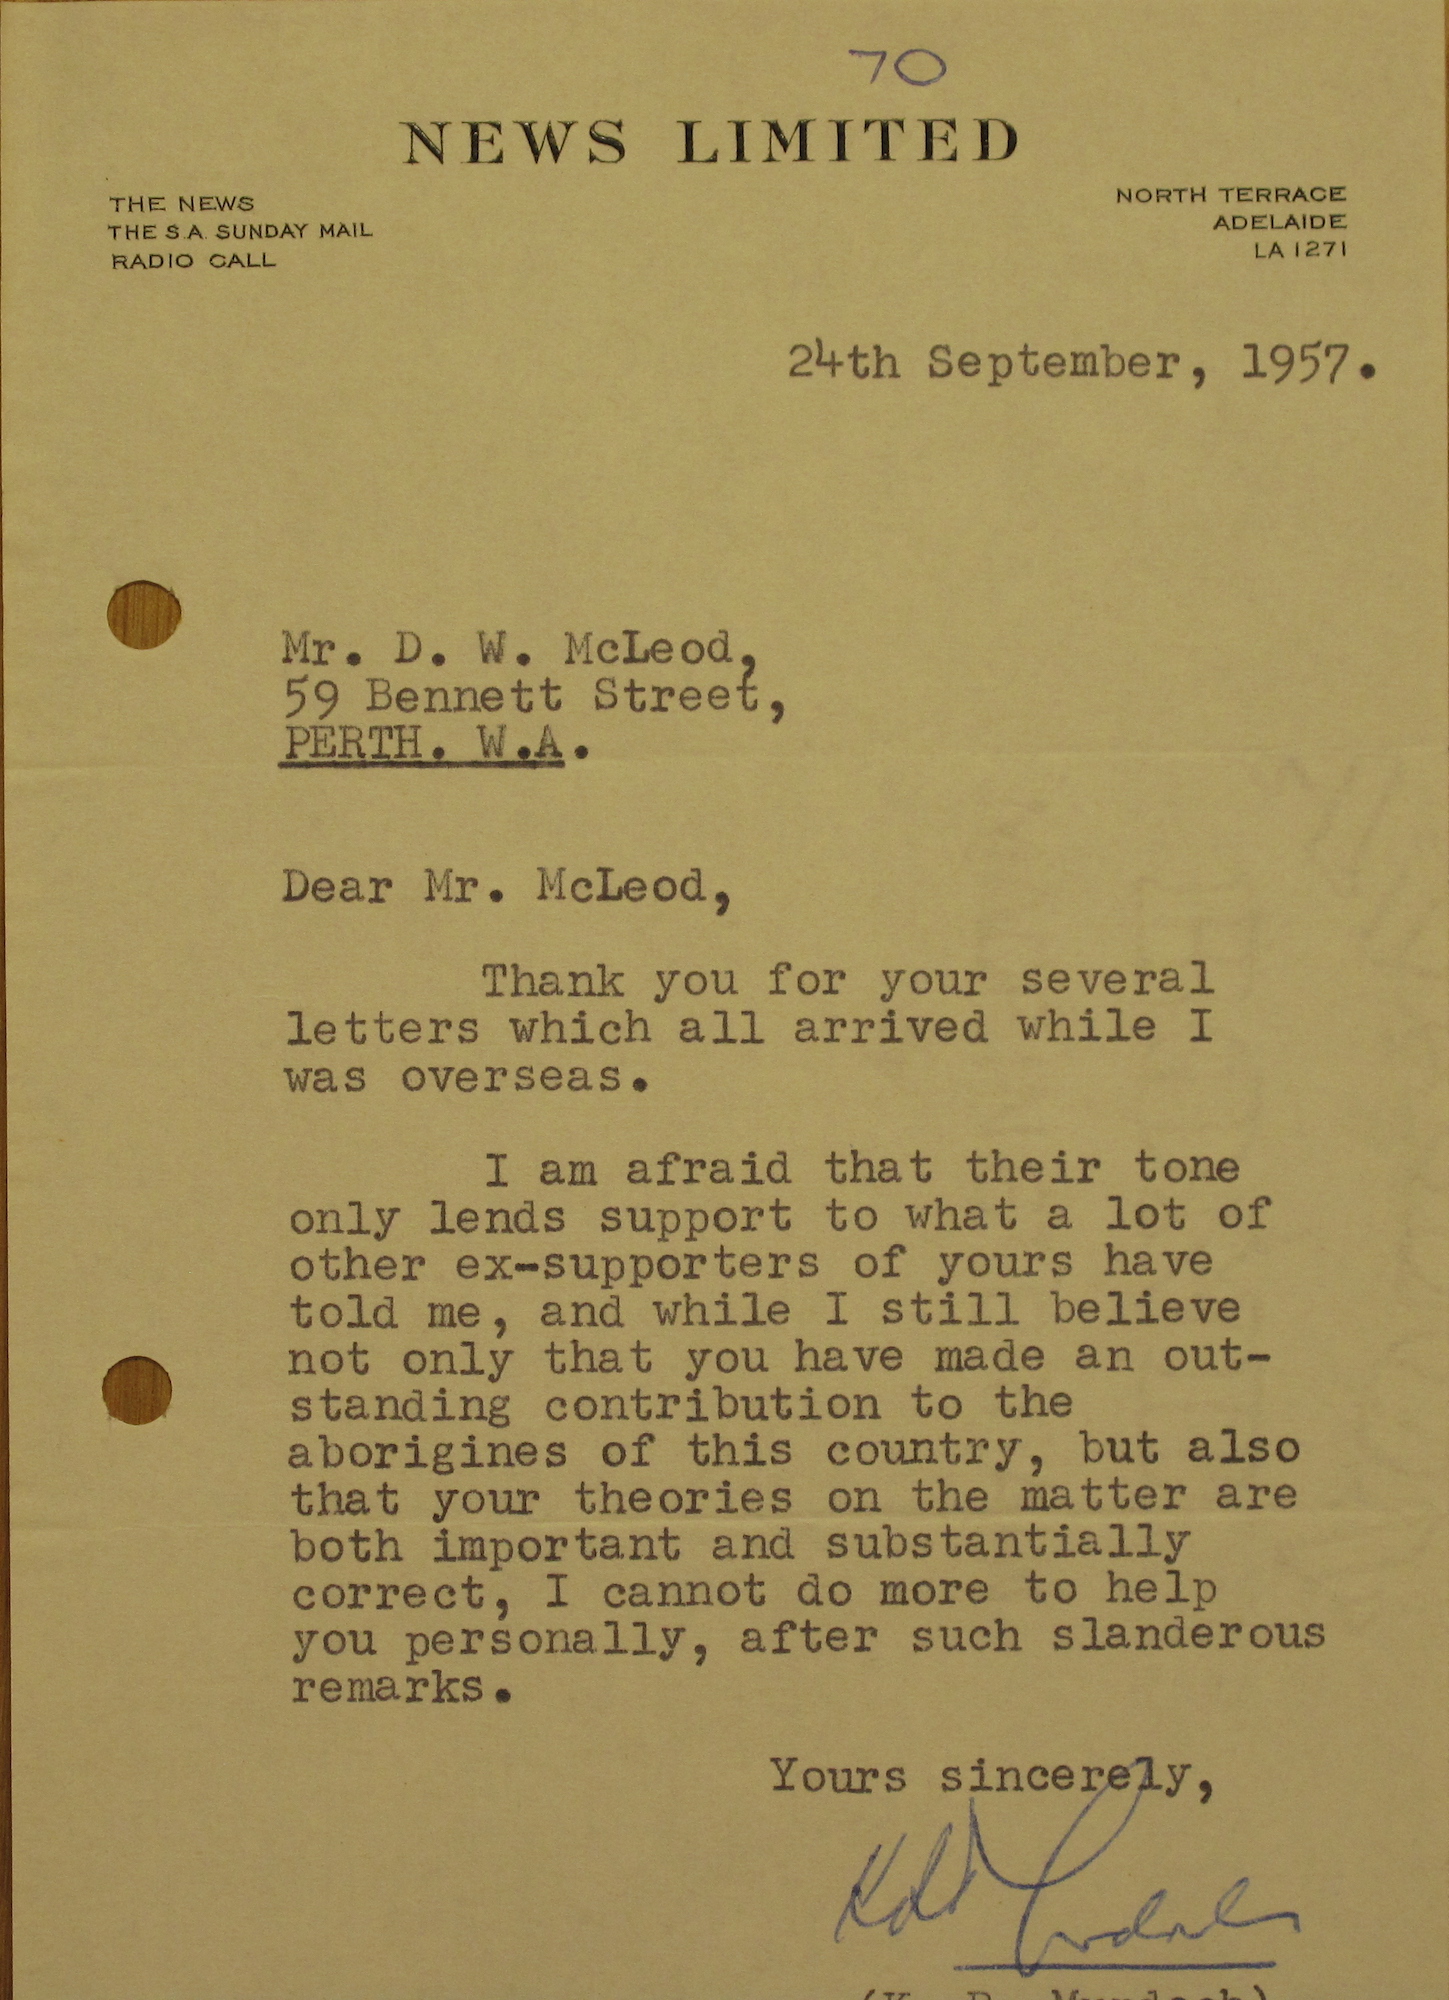 Rupert Murdoch to Don McLeod, 24 September 1957